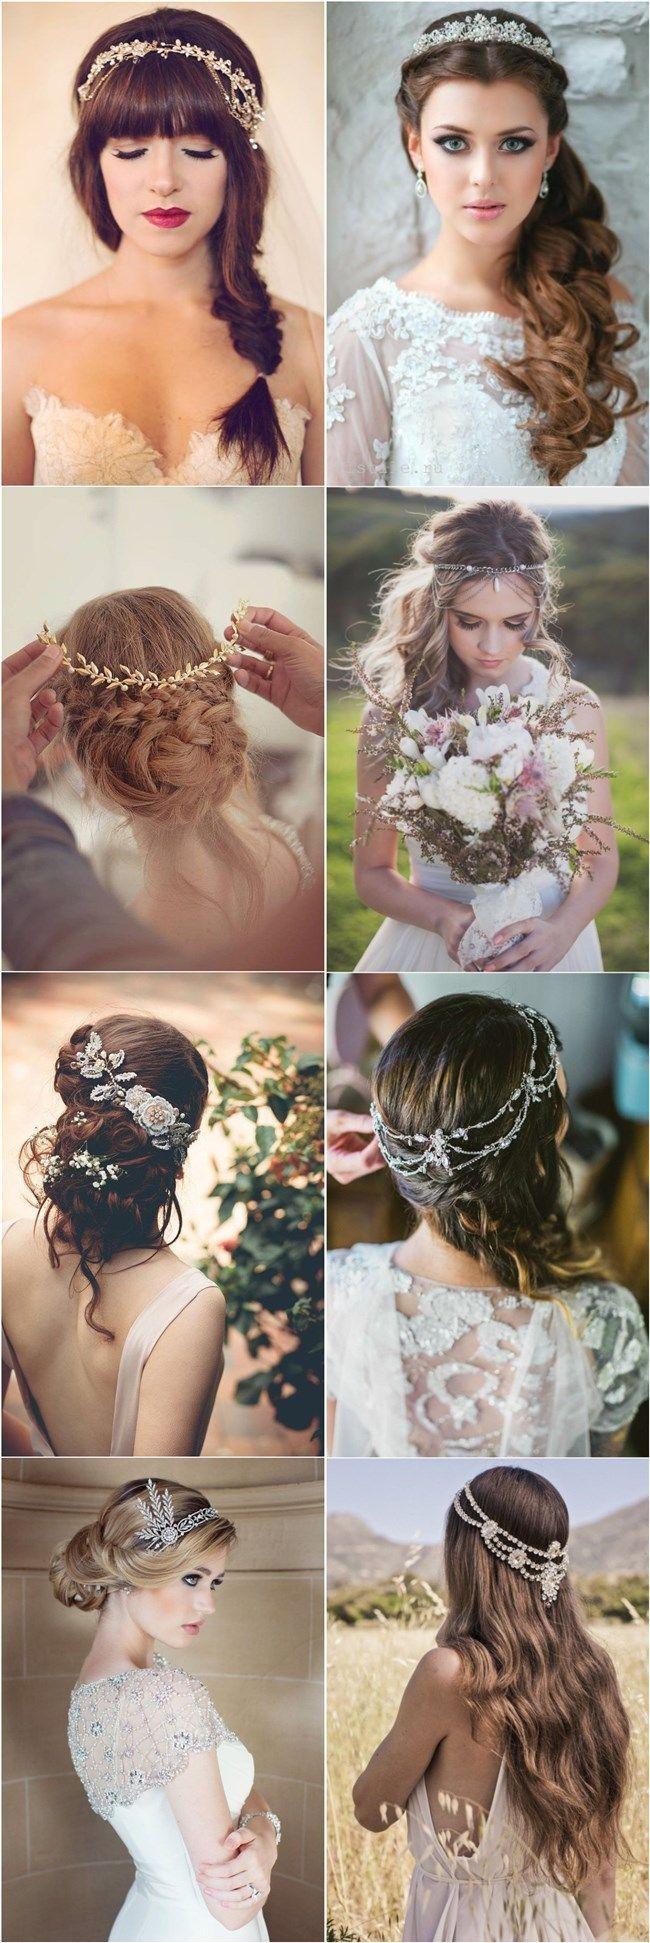 زفاف - 25 Amazing Wedding Hairstyles With Headpiece